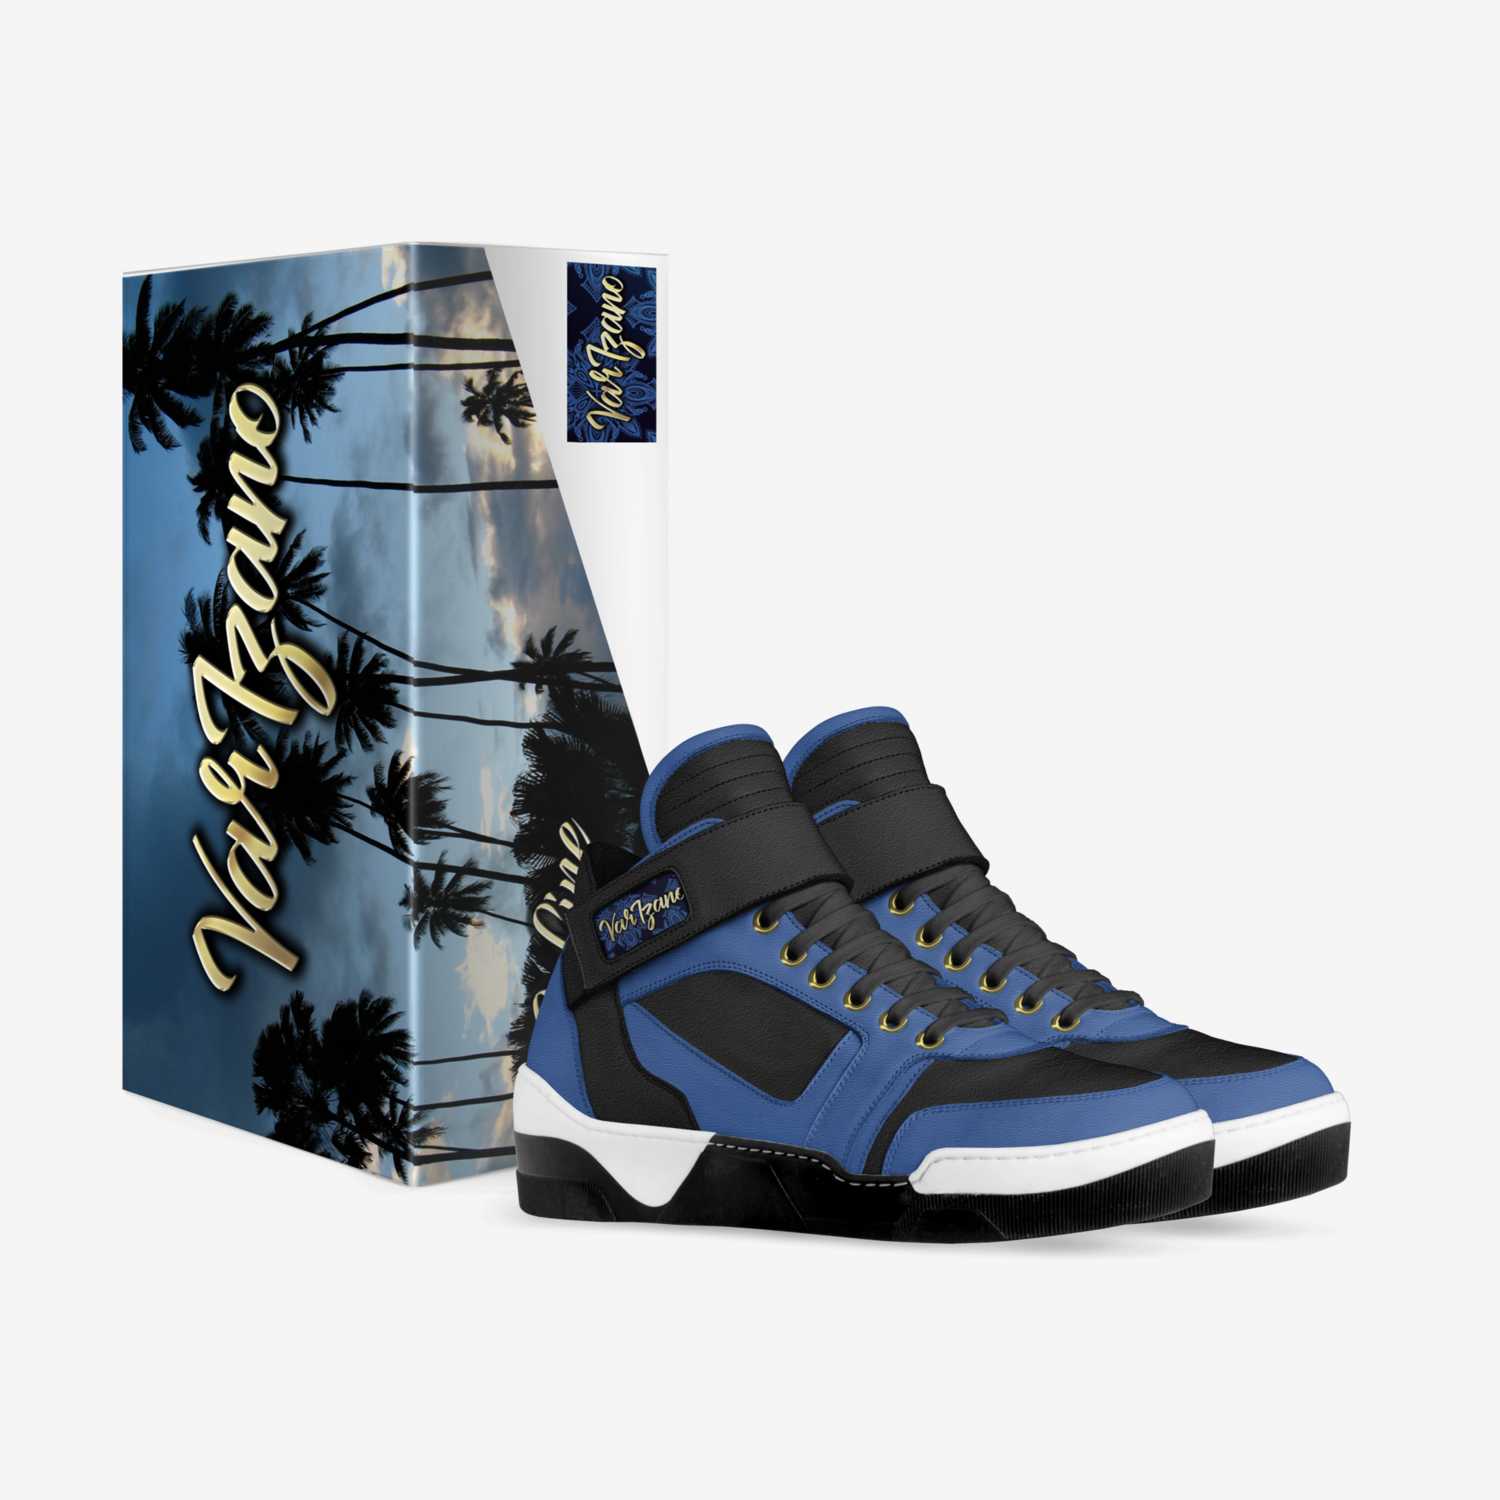 Varizano S-LINE custom made in Italy shoes by Varizano | Box view